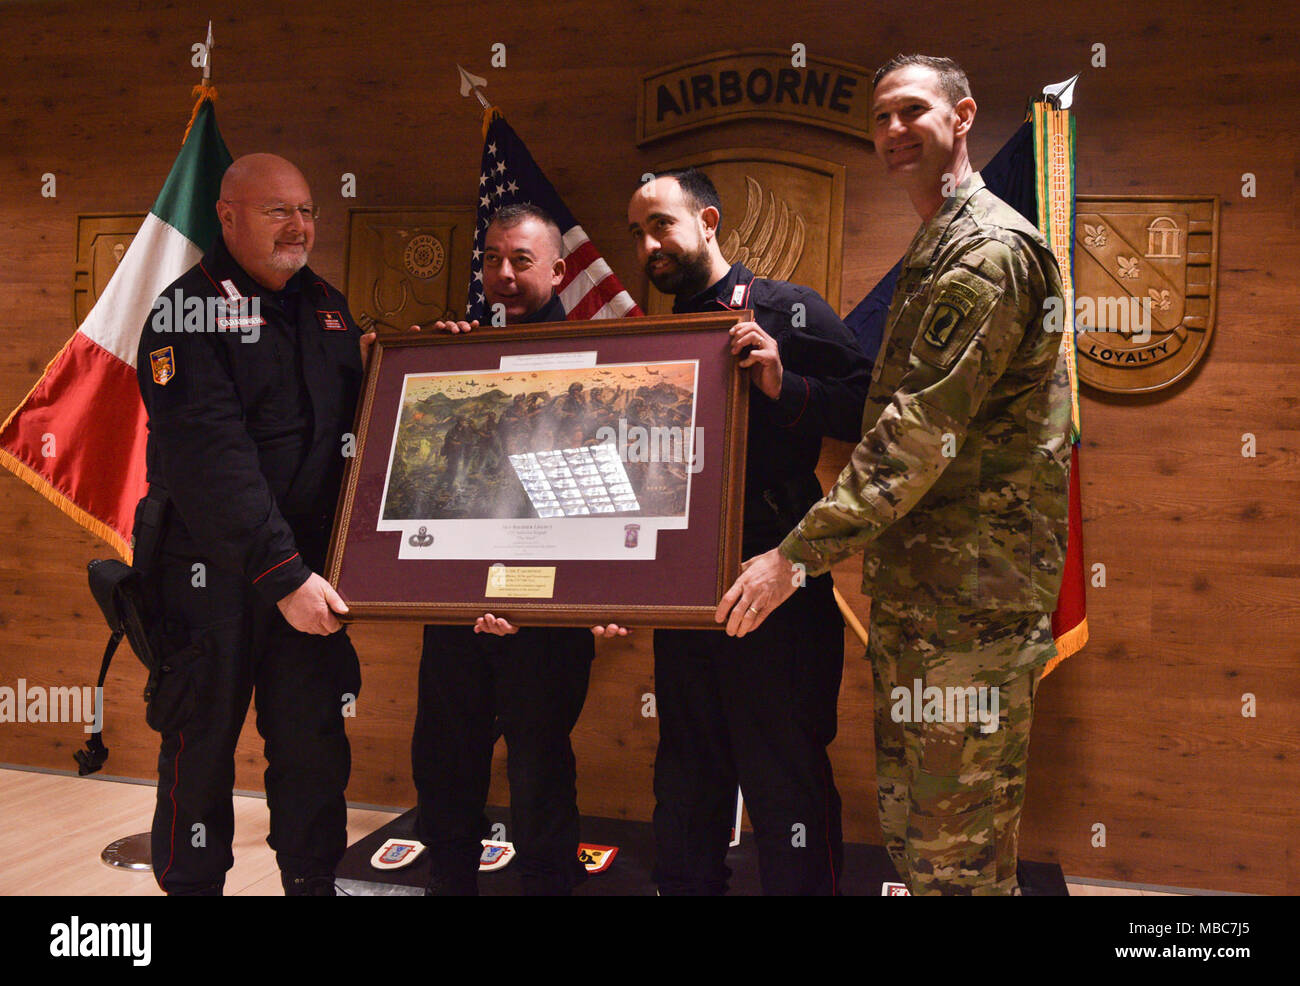 Colonel Jay Bartholomees präsentieren die Carabinieri mit einem eingeschrieben Bild von der Linie der 173Rd Airborne Brigade als Anerkennung für ihre anhaltende Unterstützung des Sky Soldier Mission. Stockfoto